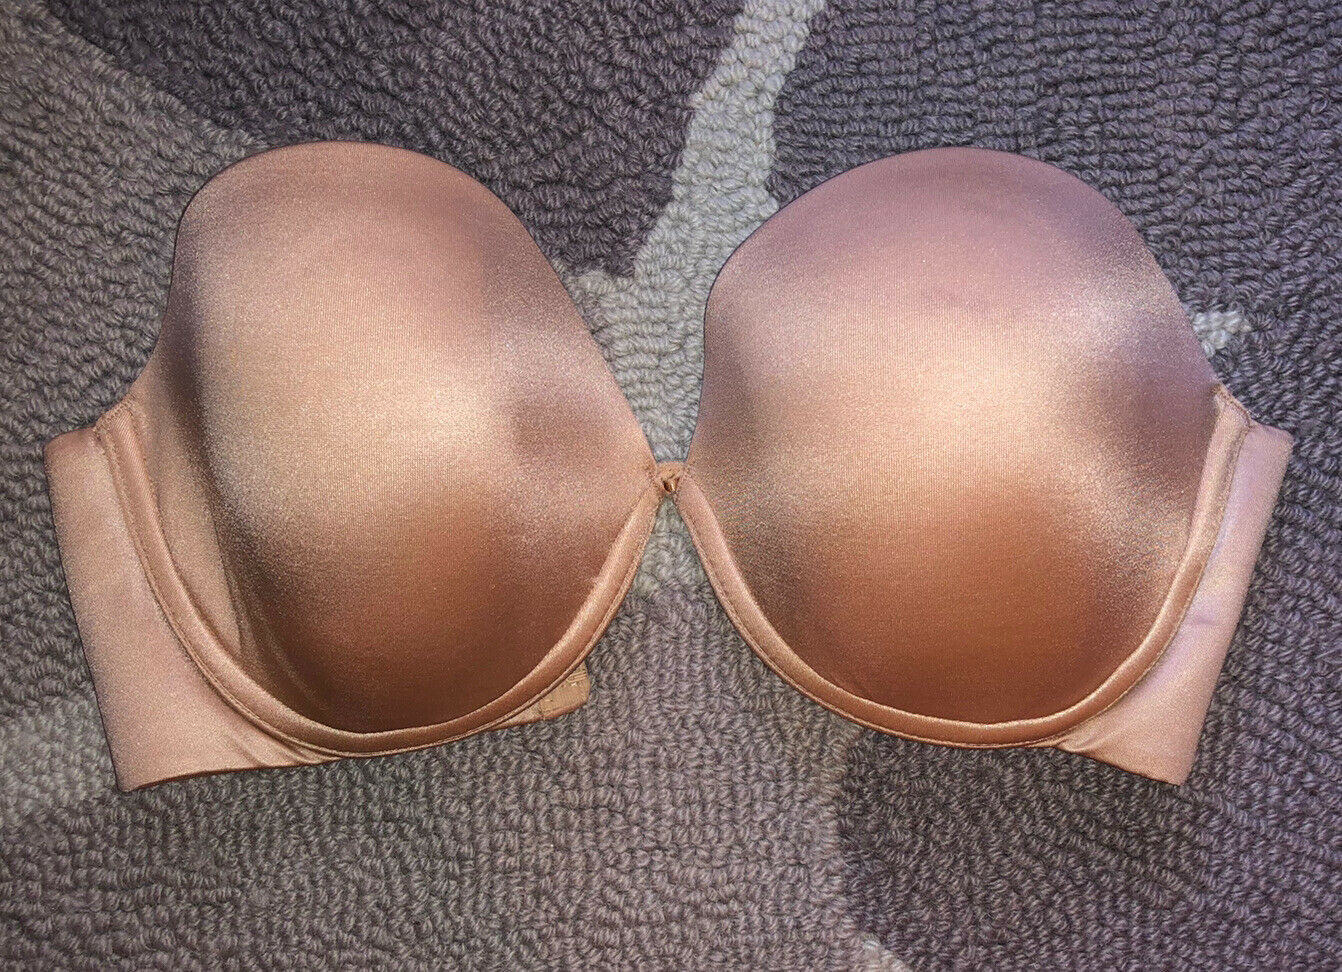 Victorias Secret Very Sexy Strapless Bra Neutral Nude Beige Size 34D